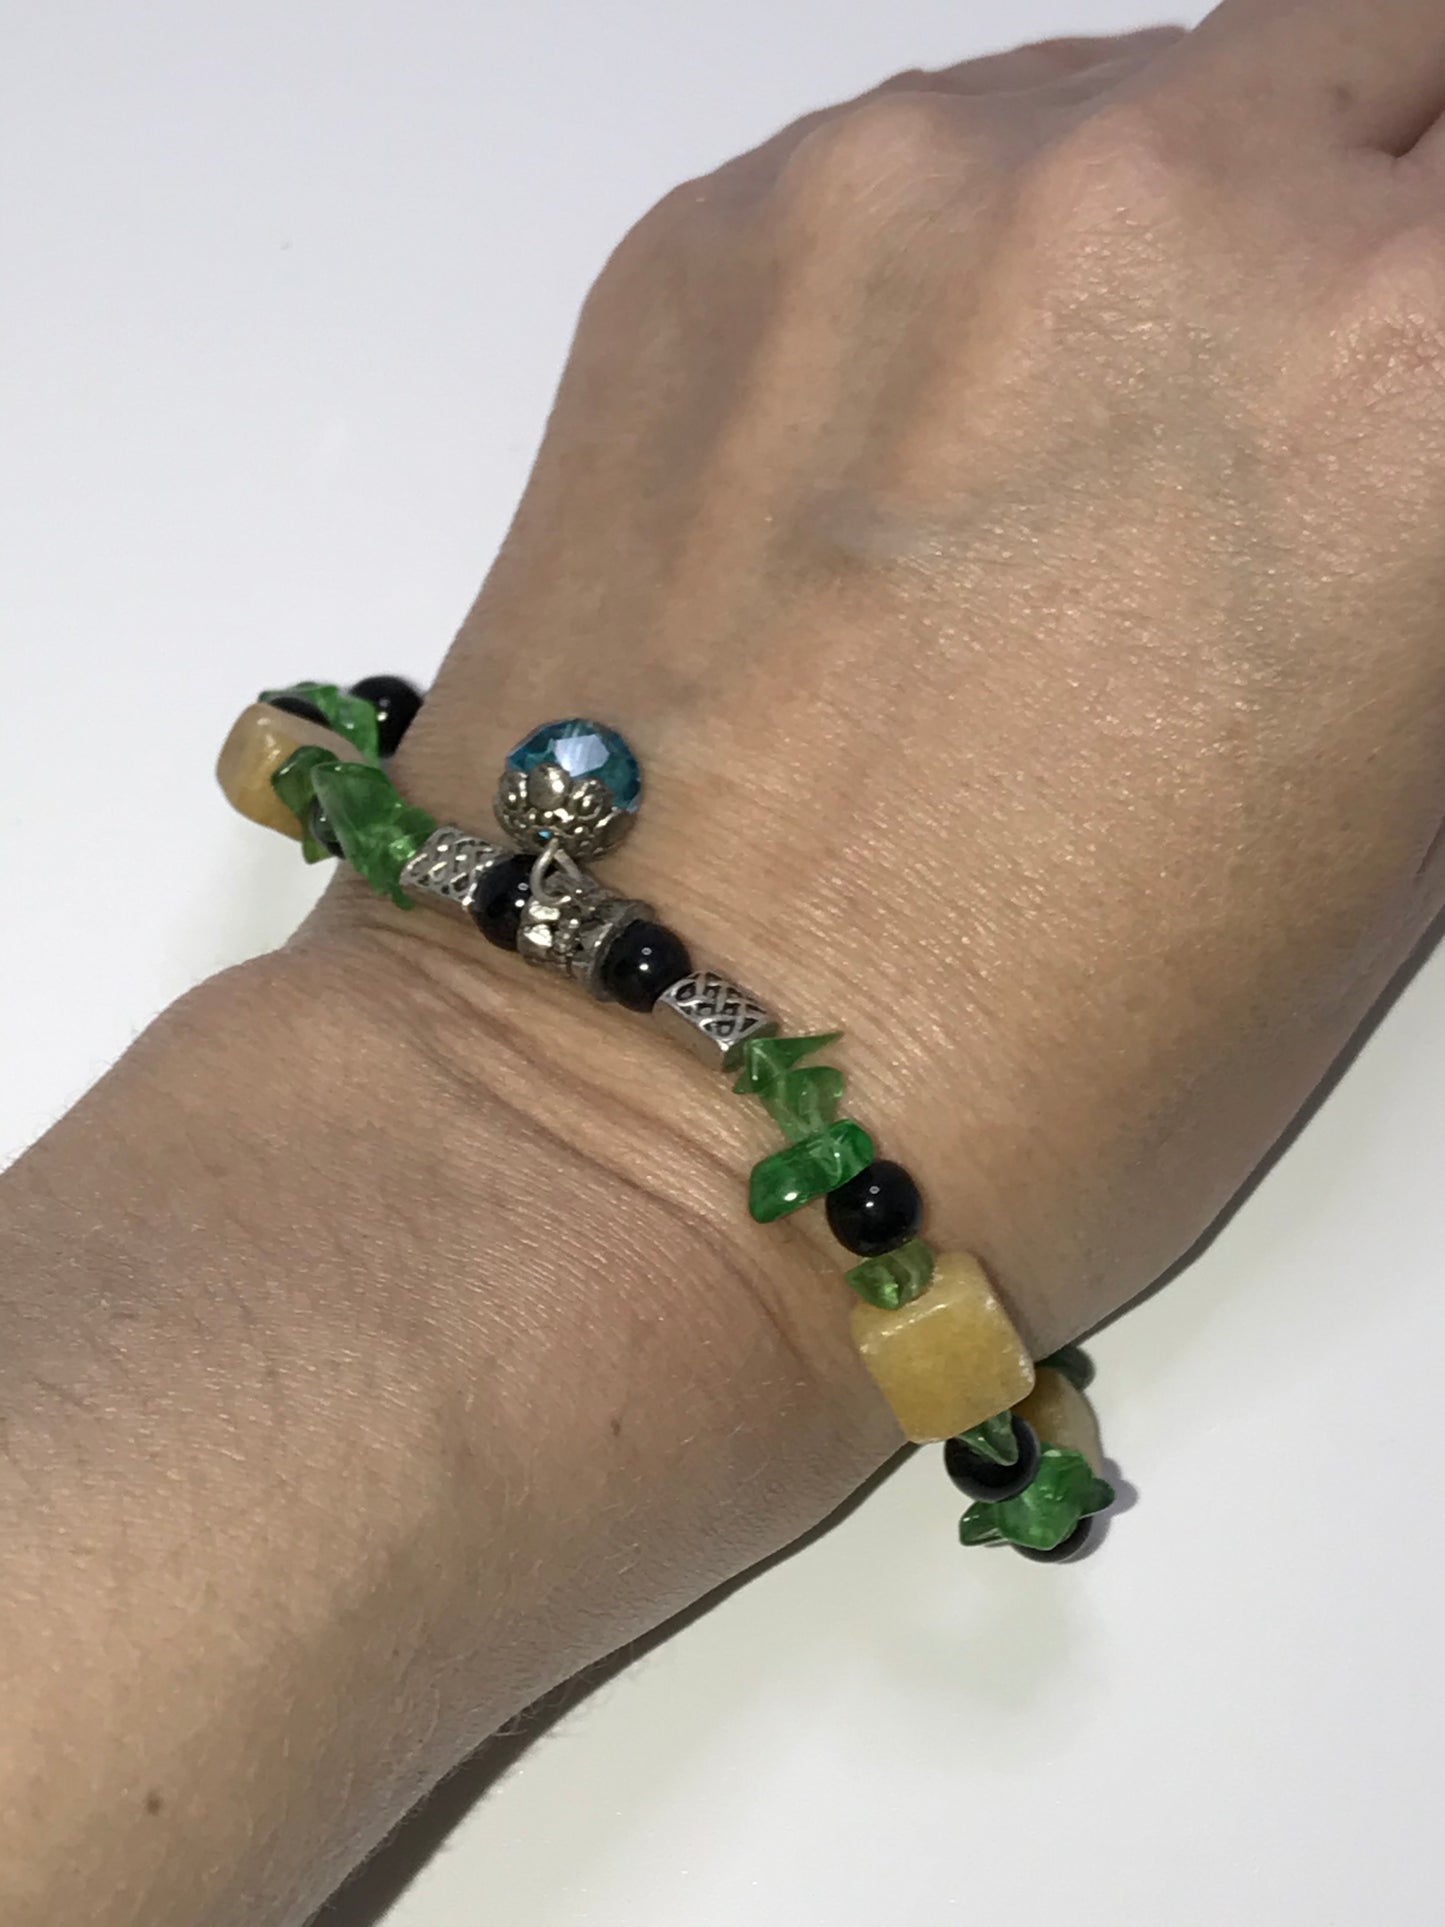 9 1/4" Snowy Quartz and Green Glass Bracelet